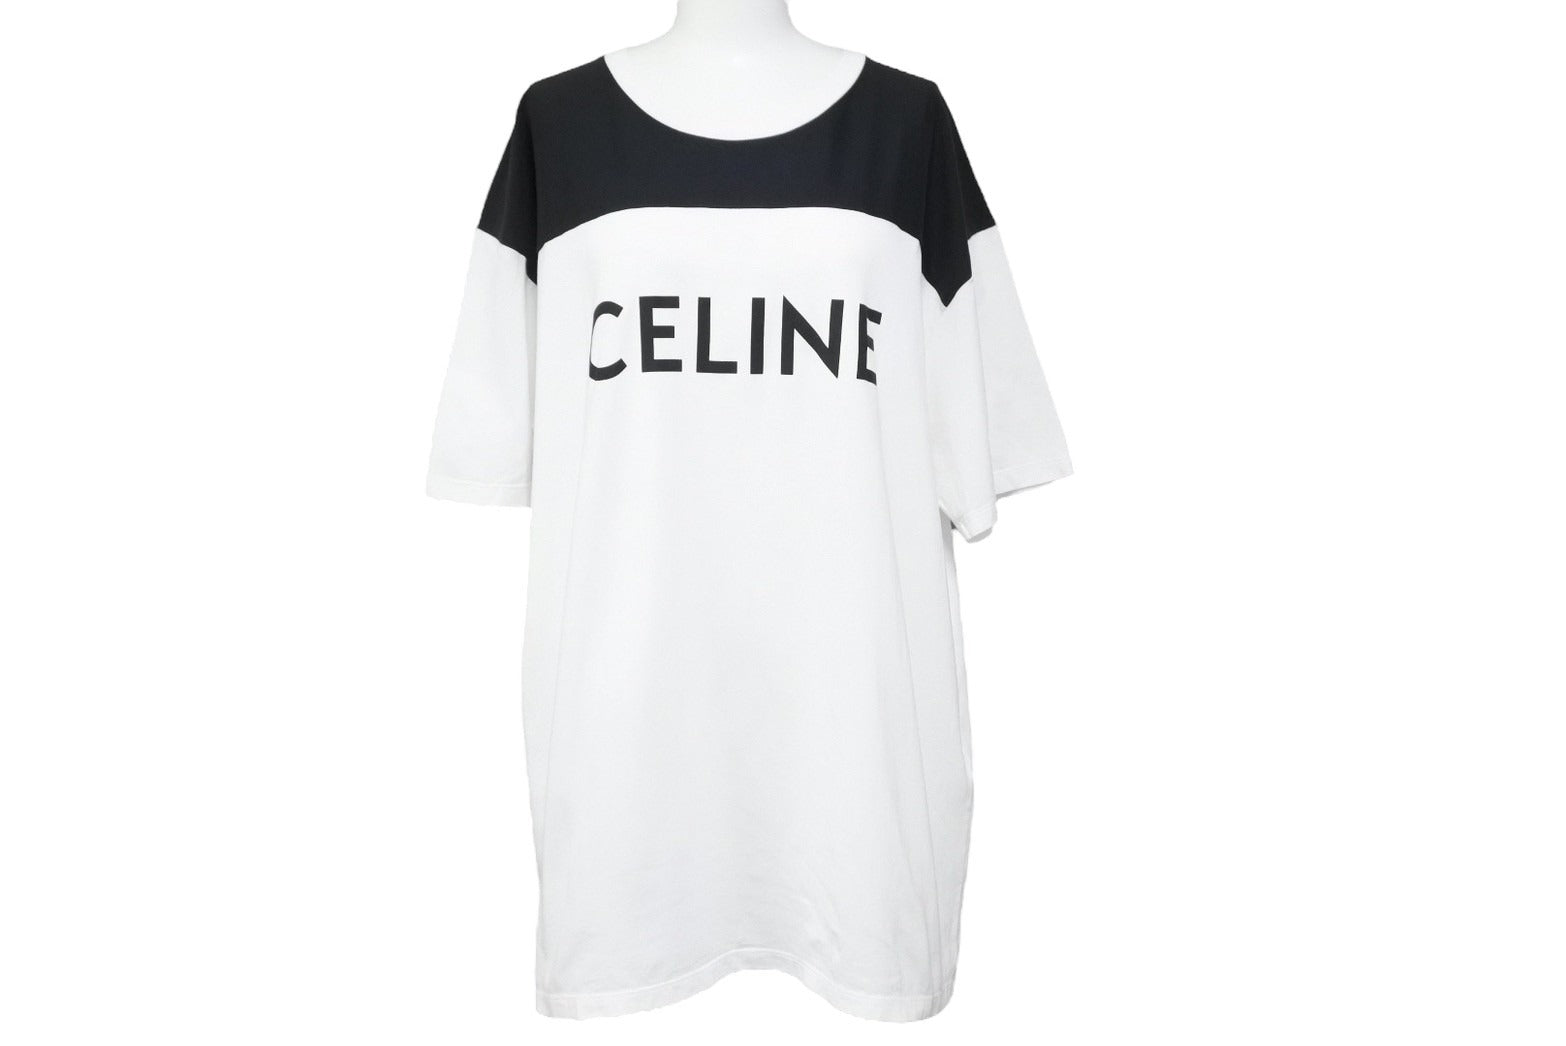 CELINE セリーヌ ロゴ Tシャツ ブラック Lサイズ